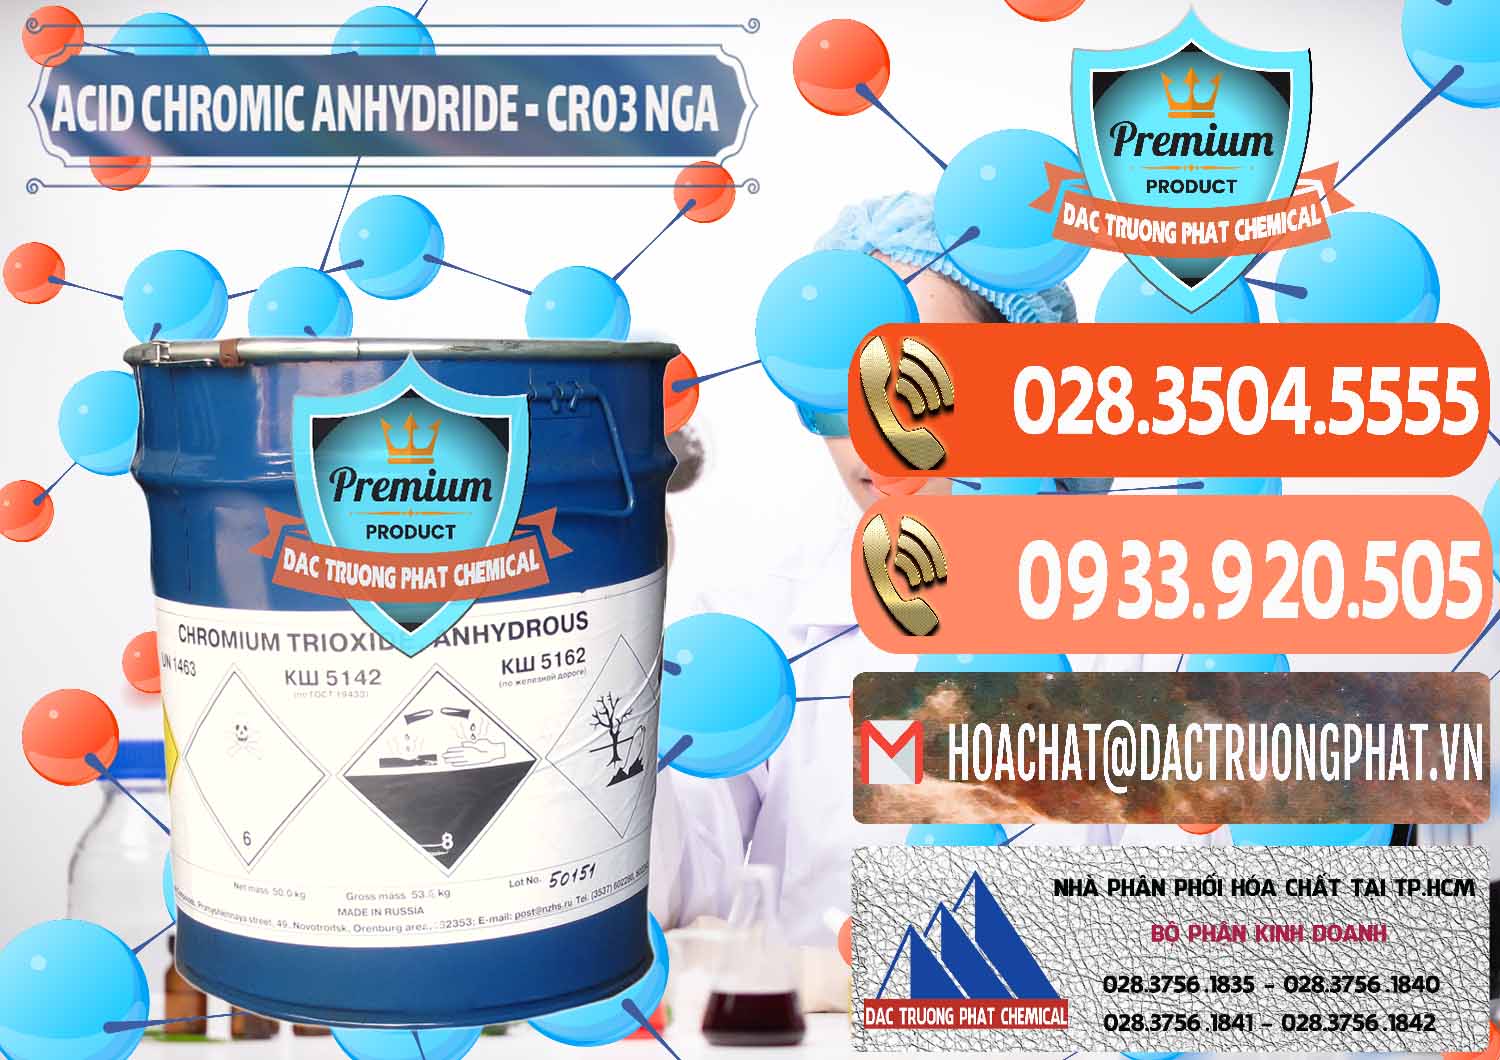 Nơi chuyên bán và cung ứng Acid Chromic Anhydride - Cromic CRO3 Nga Russia - 0006 - Cty chuyên bán & phân phối hóa chất tại TP.HCM - hoachatmientay.com